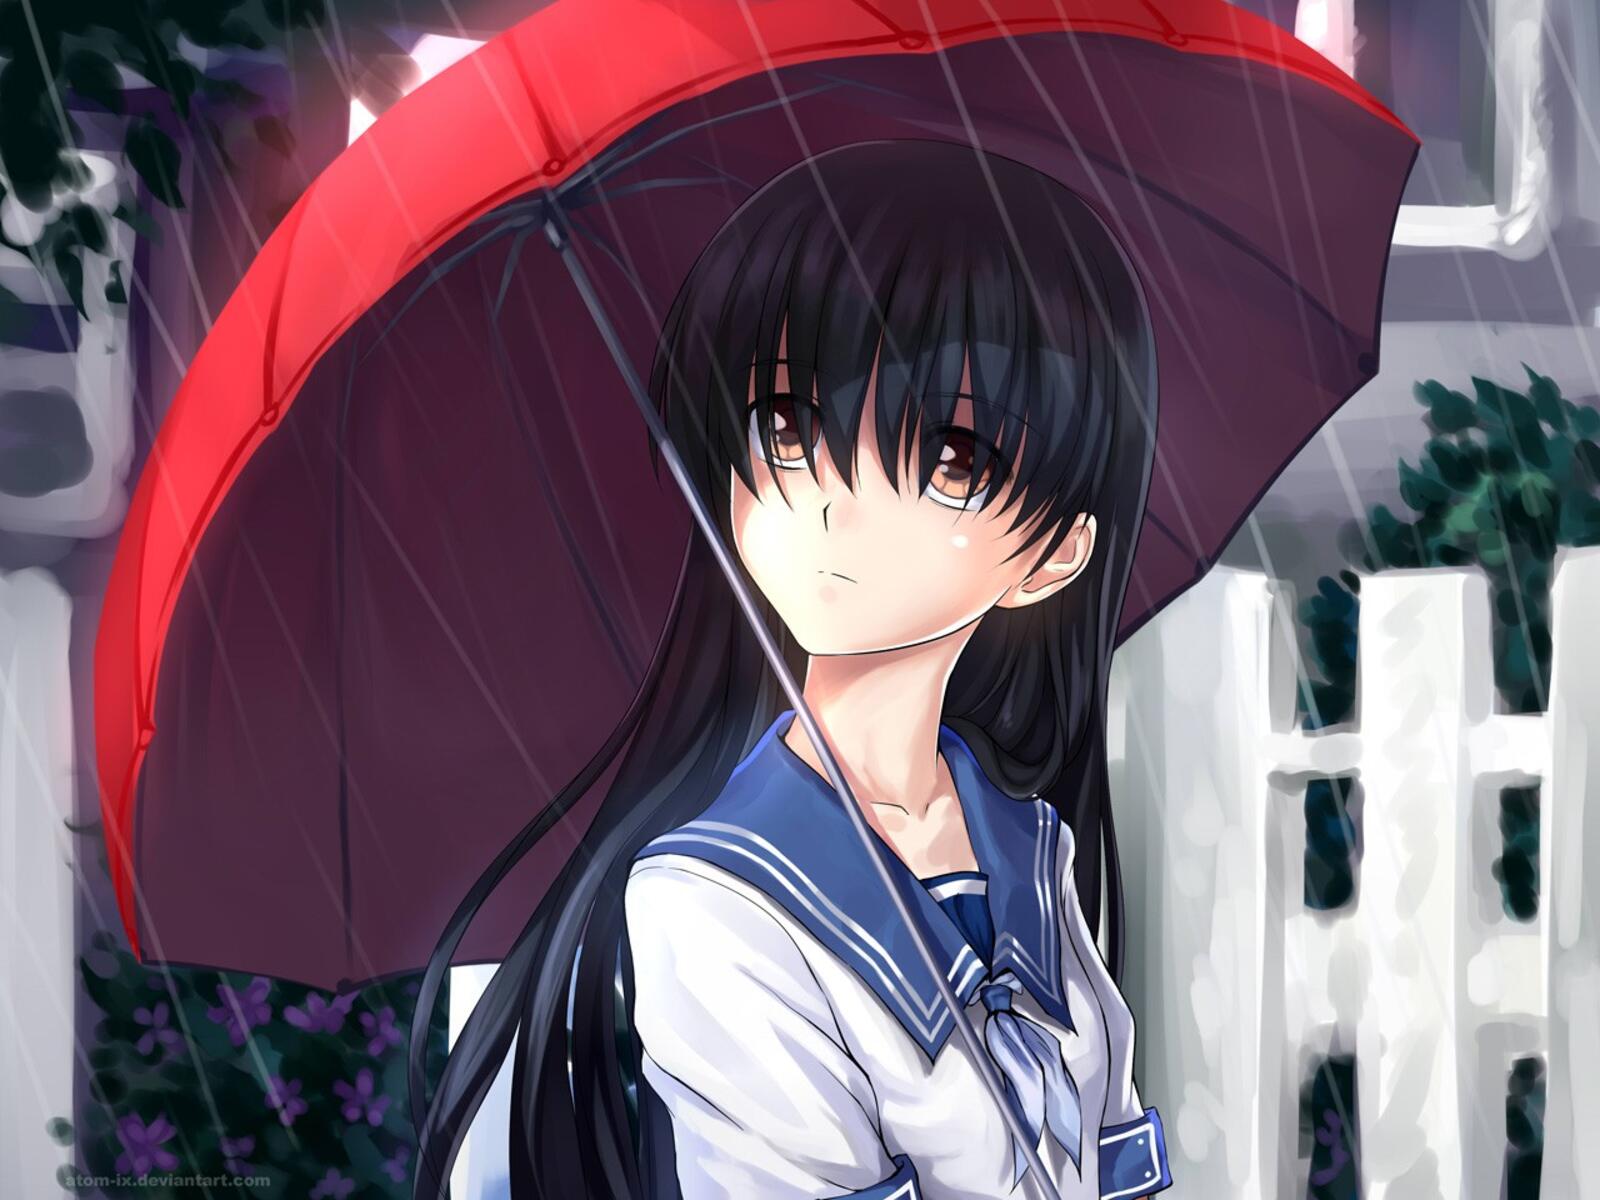 Бесплатное фото Аниме девочка под красным зонтом